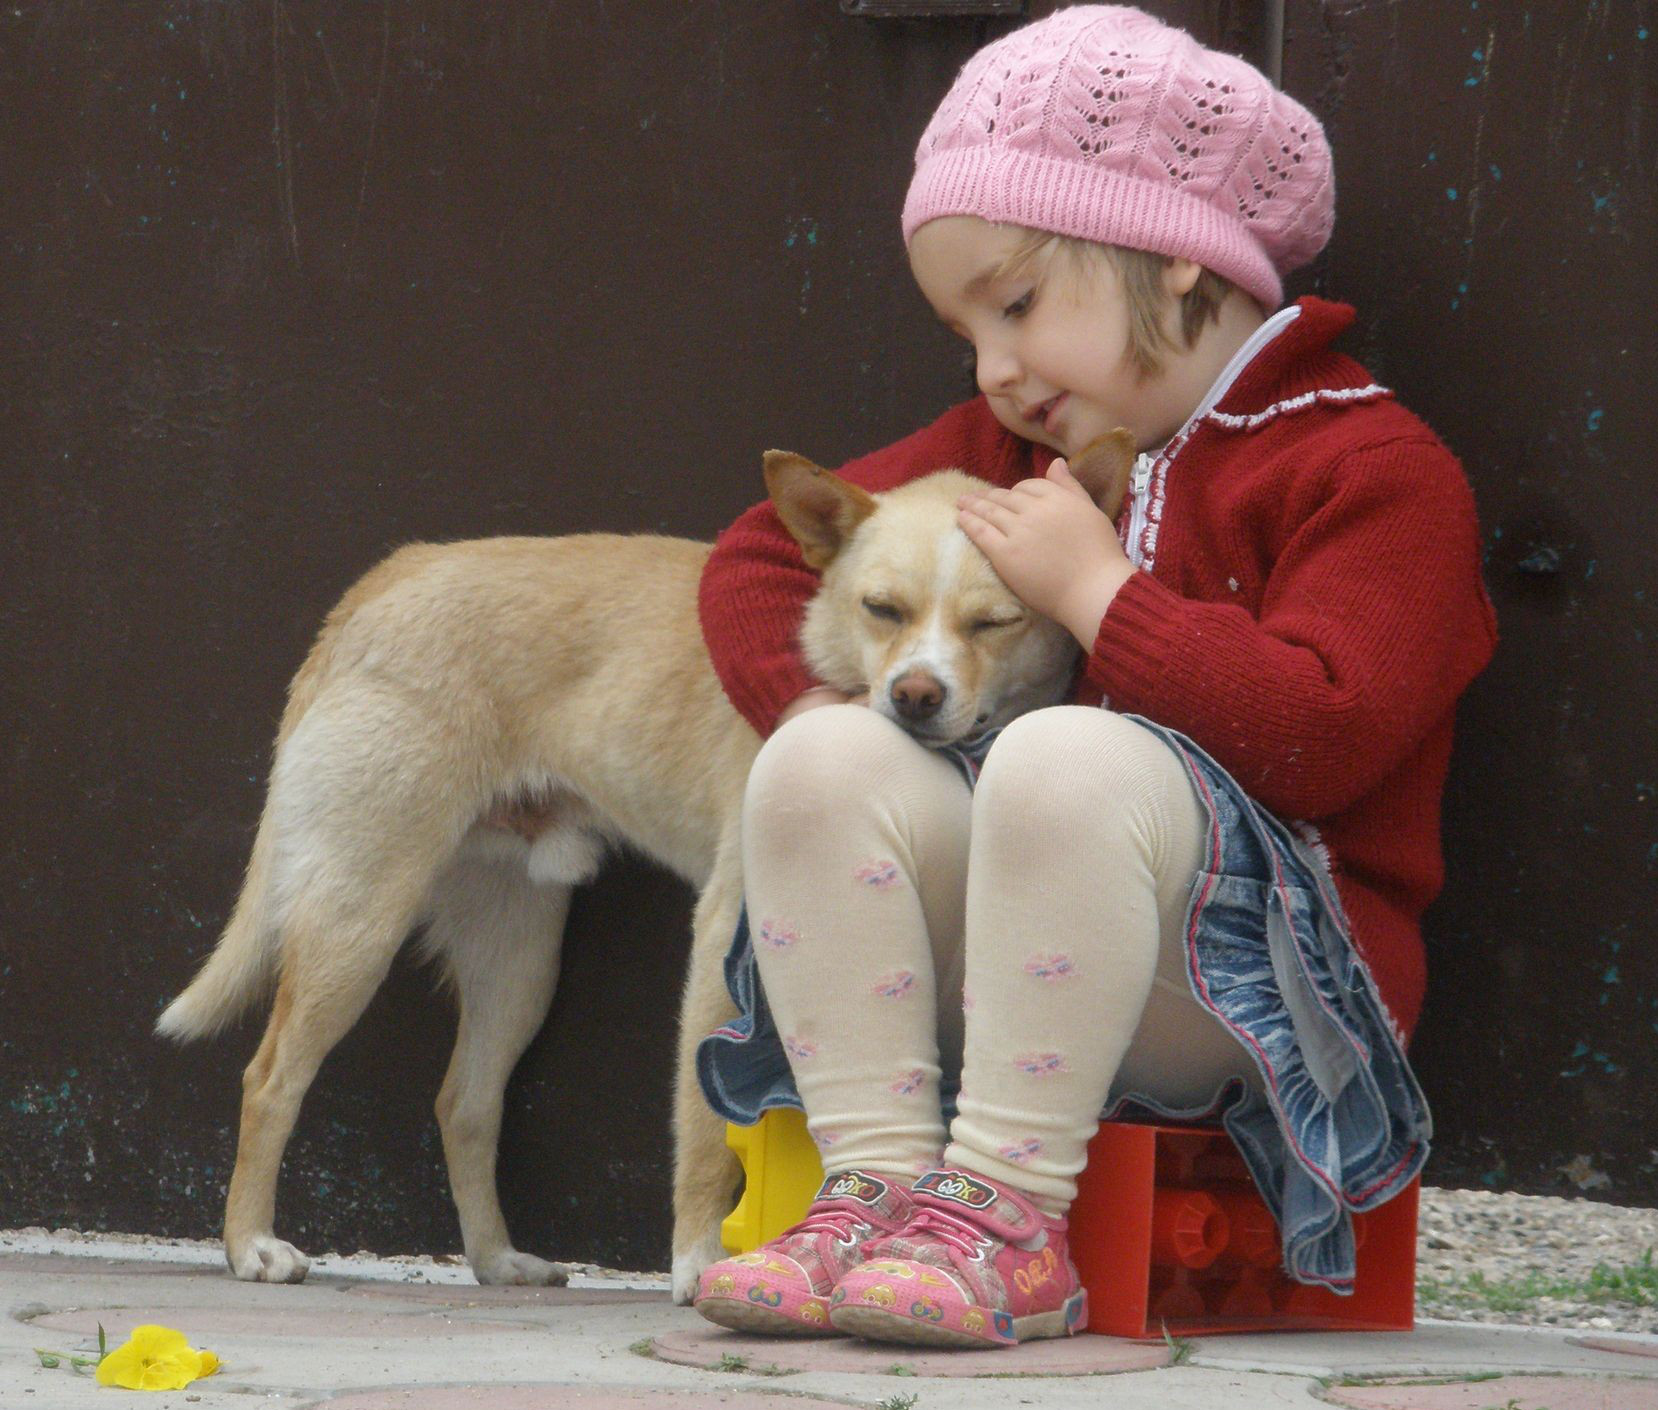 Будь милосерден и добр. Сочувствие животным. Доброта картинки. Добро к животным. Собака для детей.